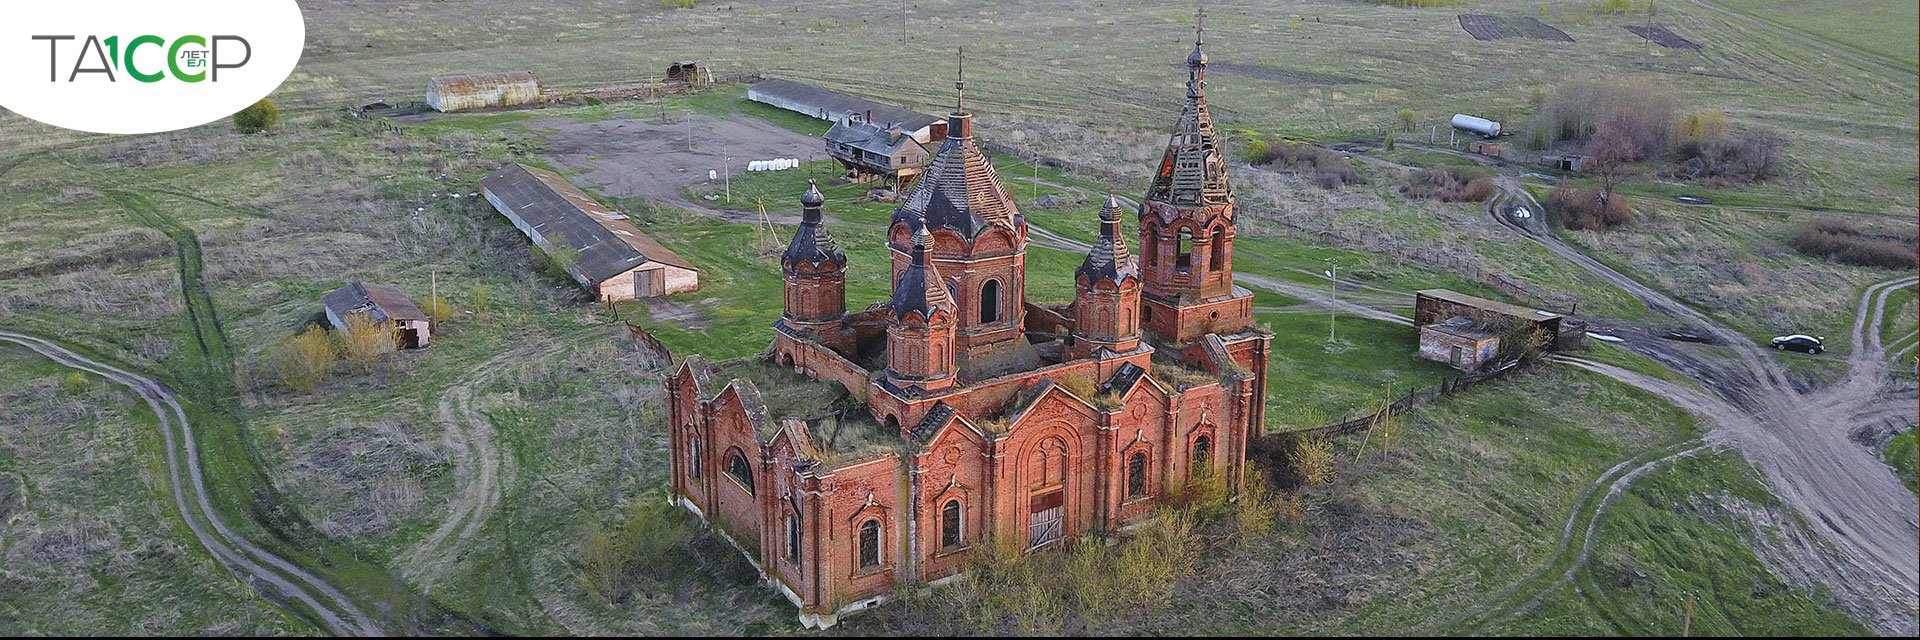 Храмы Татарстана